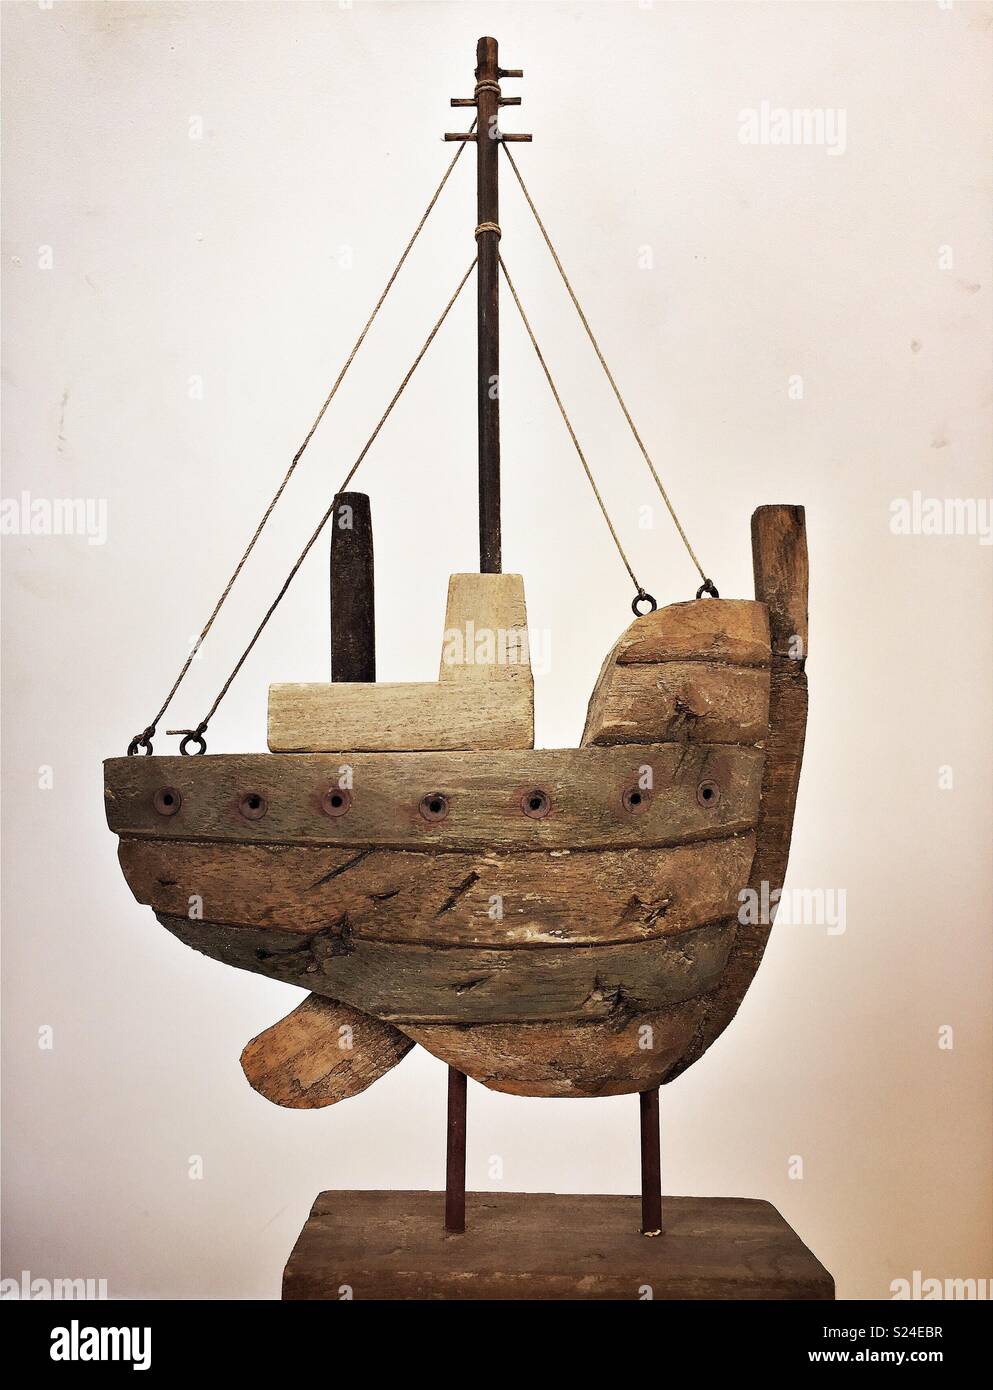 Joli bateau en bois Sculpture sur bois de l'ornement. Banque D'Images